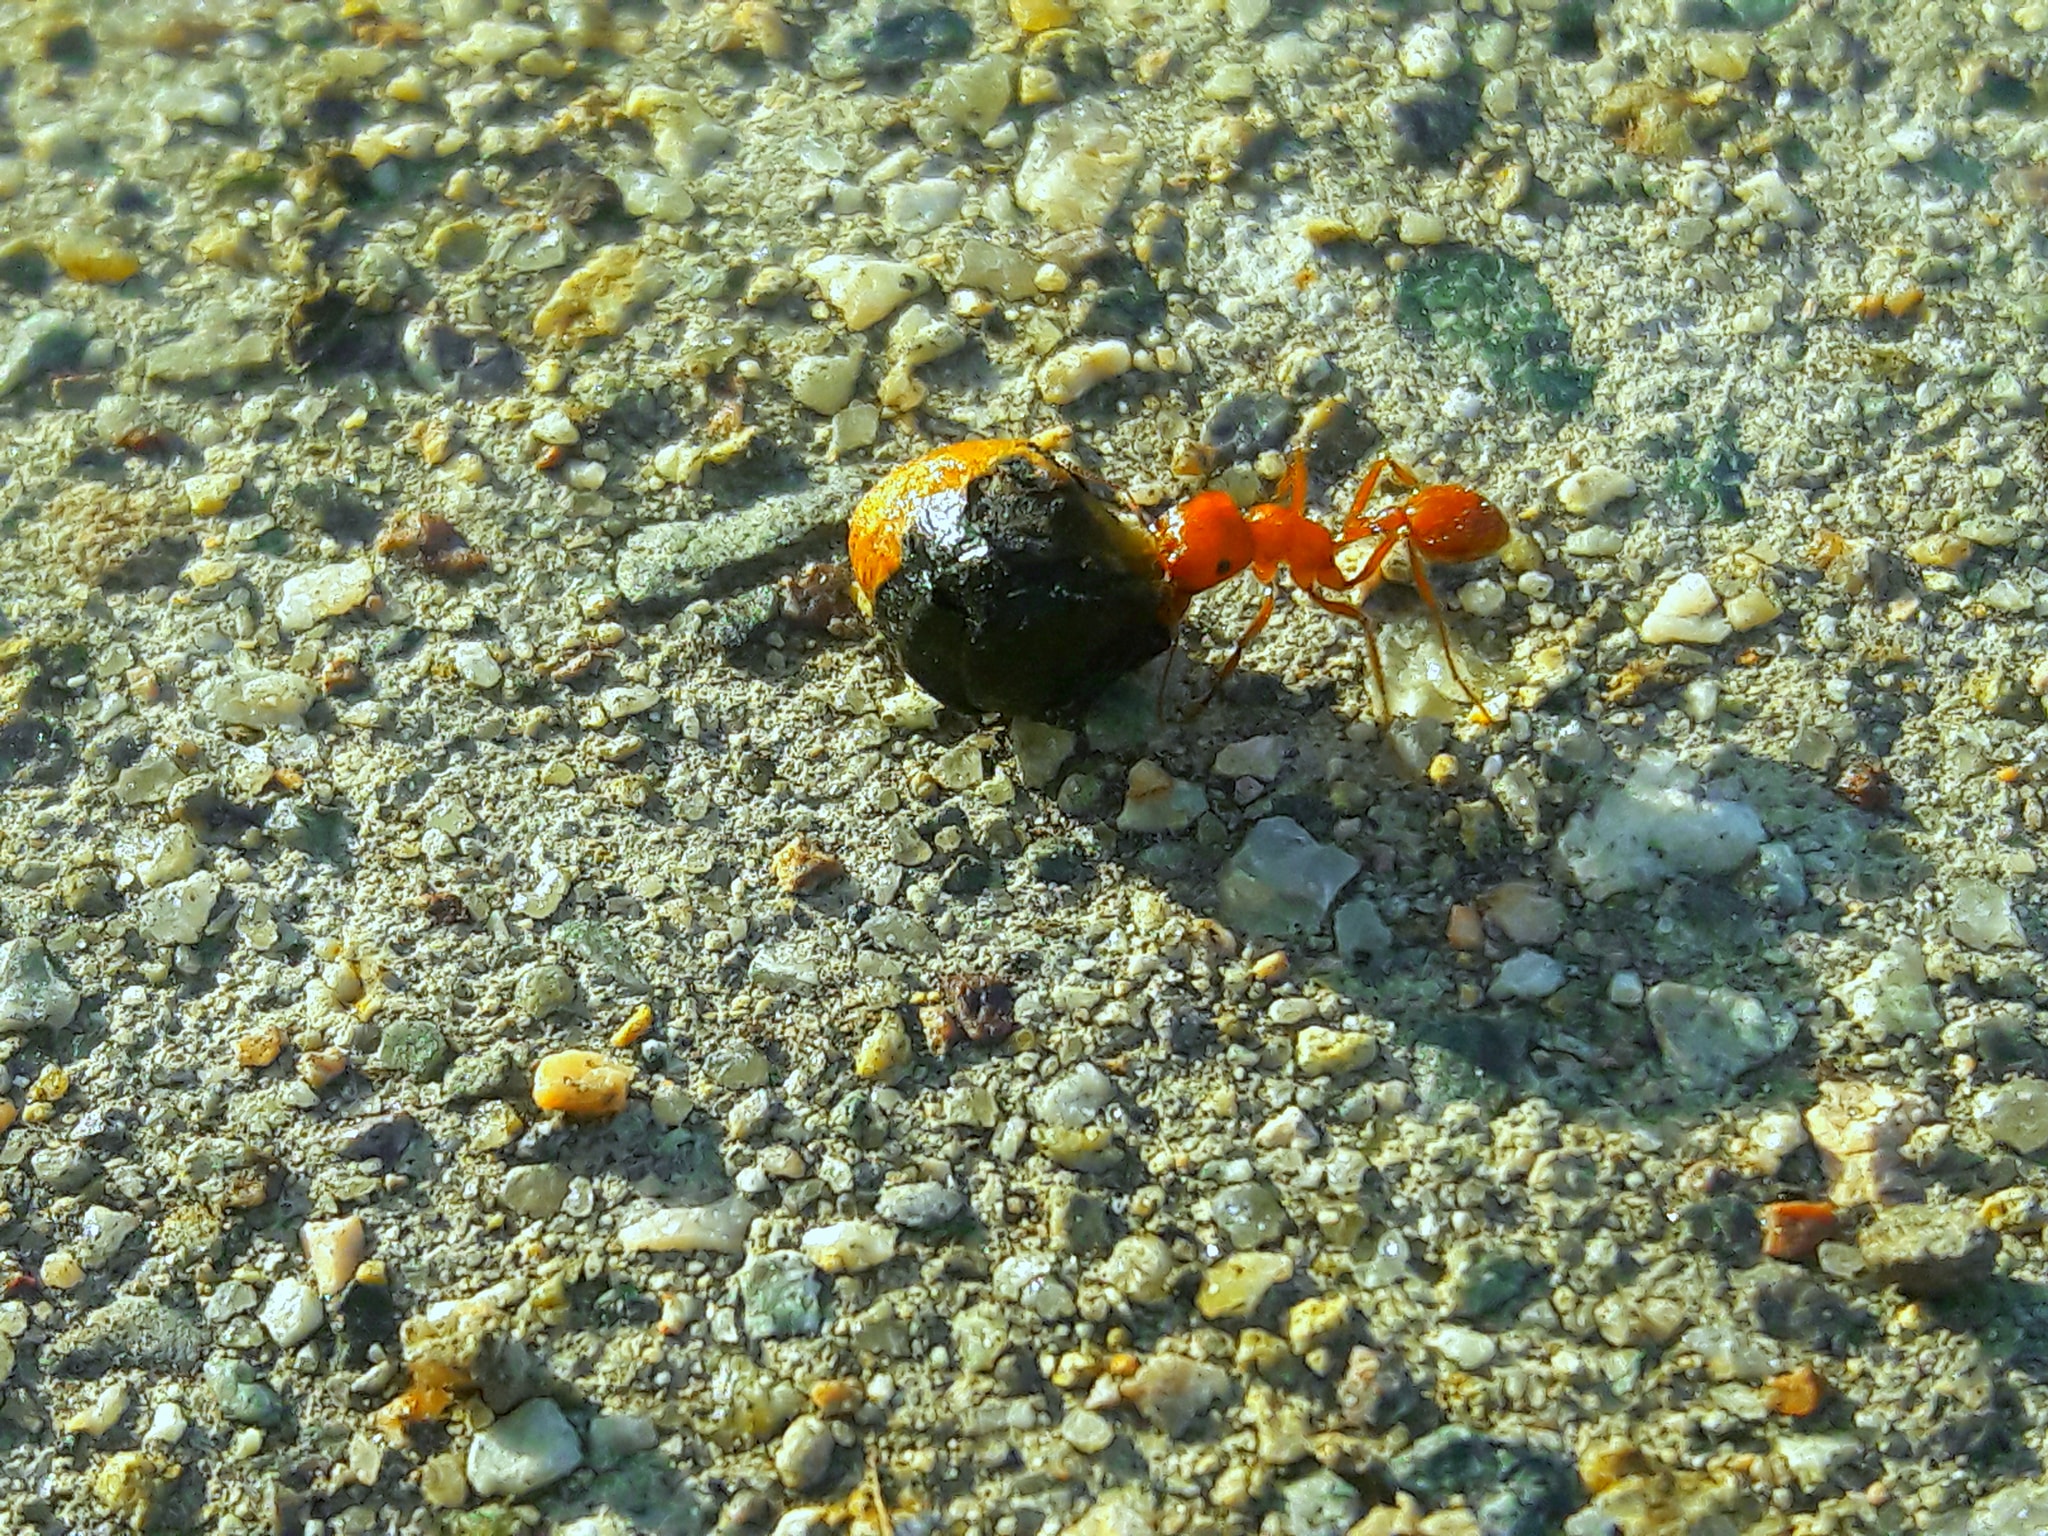 Pogonomyrmex californicus- california harvester ant